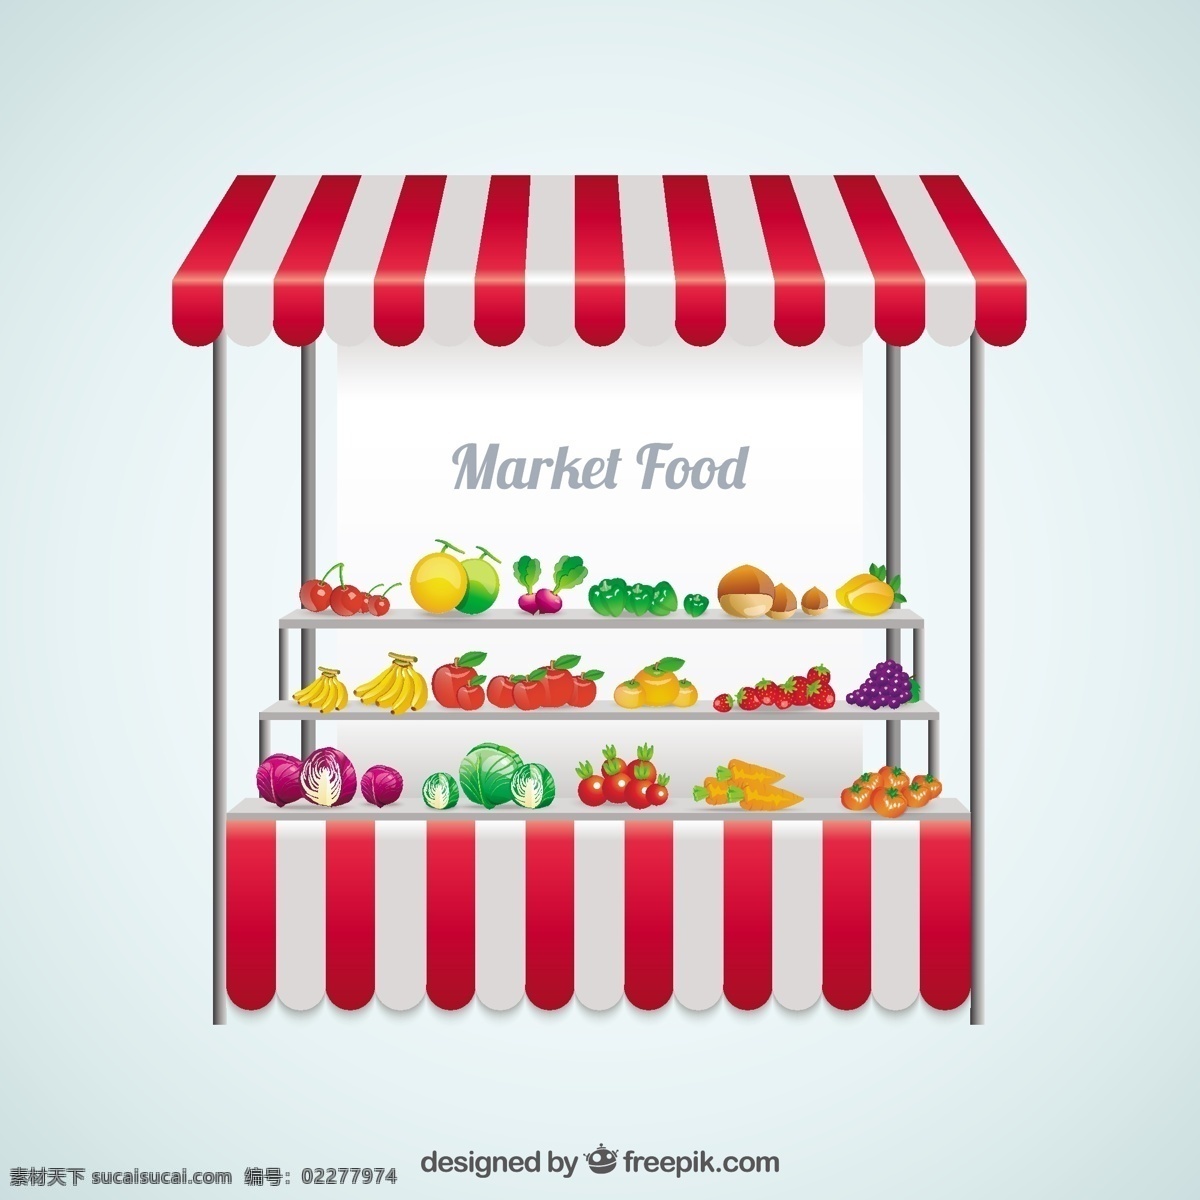 有机蔬菜背景 食品 购物 水果 蔬菜 有机 市场 蔬菜站 有机食品